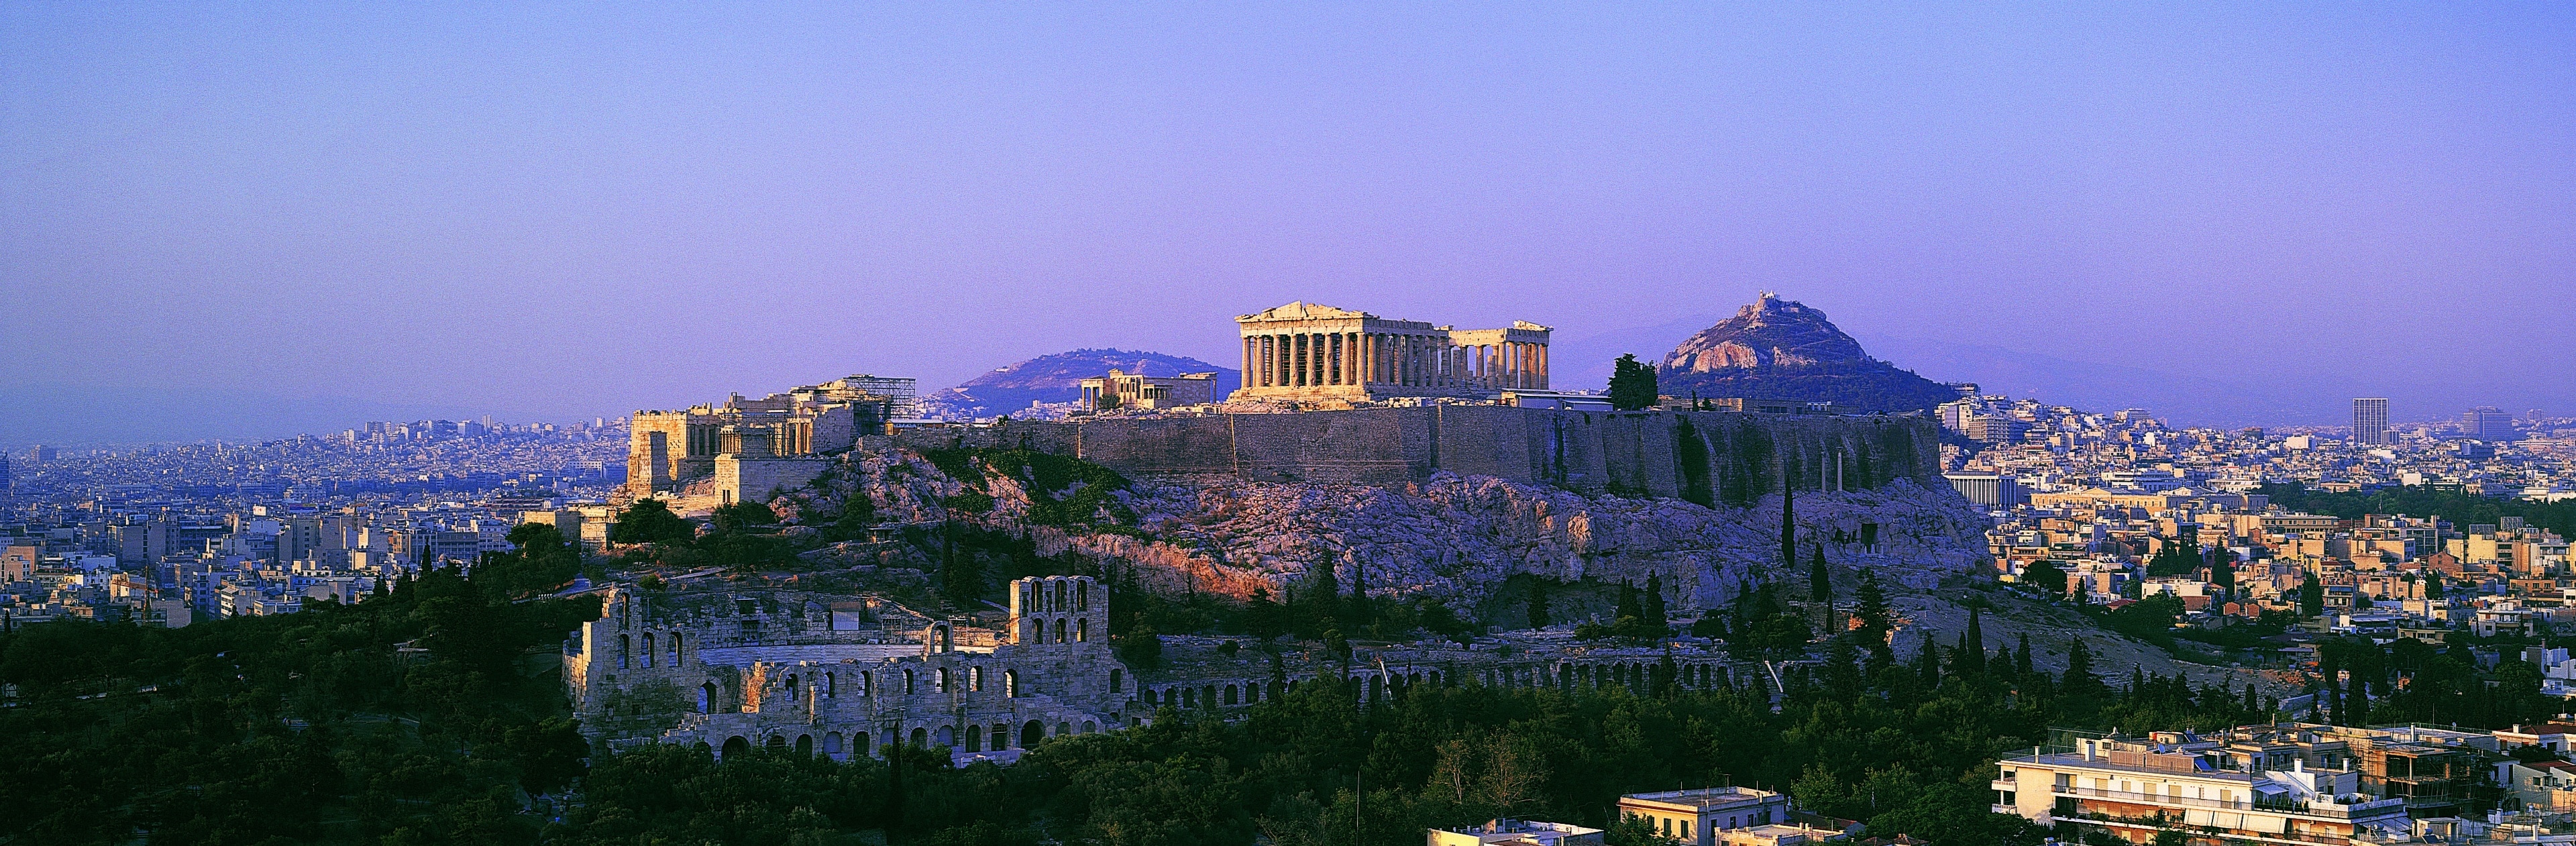 Viaja al pasado y explora los antiguos mitos grabados en los muros del templo dórico más grande de Grecia, originalmente dedicado a la diosa guerrera Atenea.